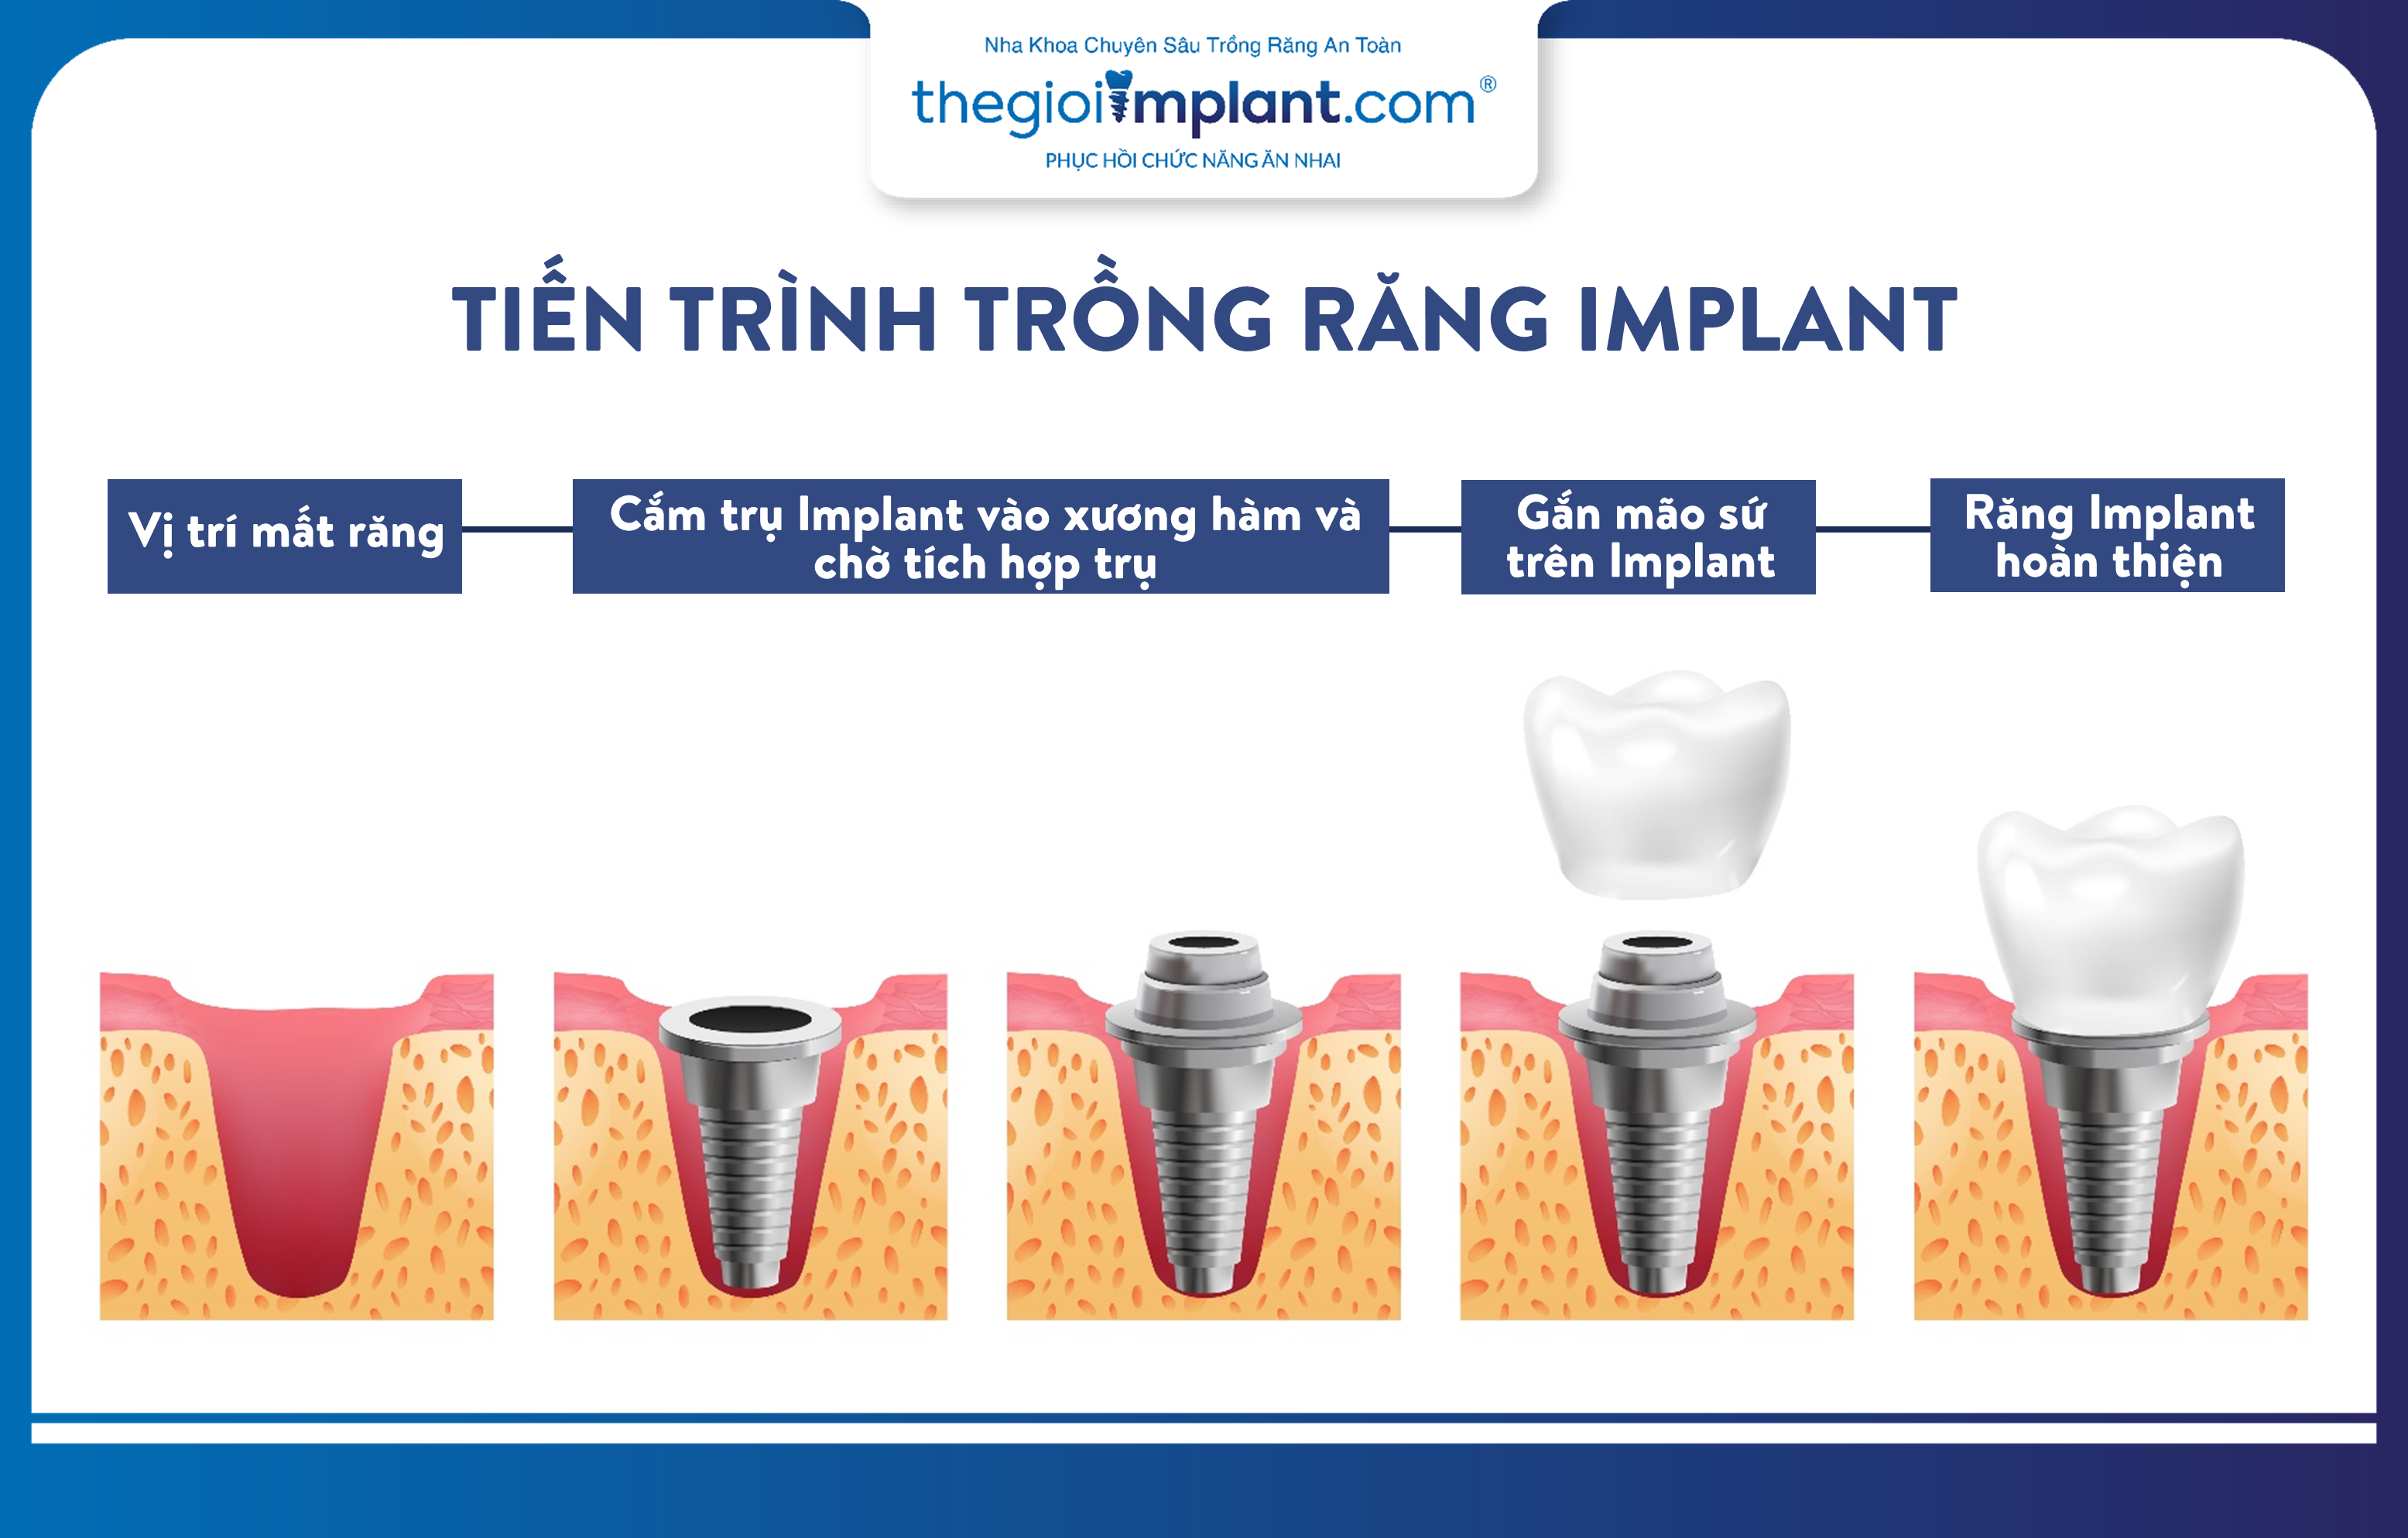 Tiến trình trồng răng Implant phục hình răng mất